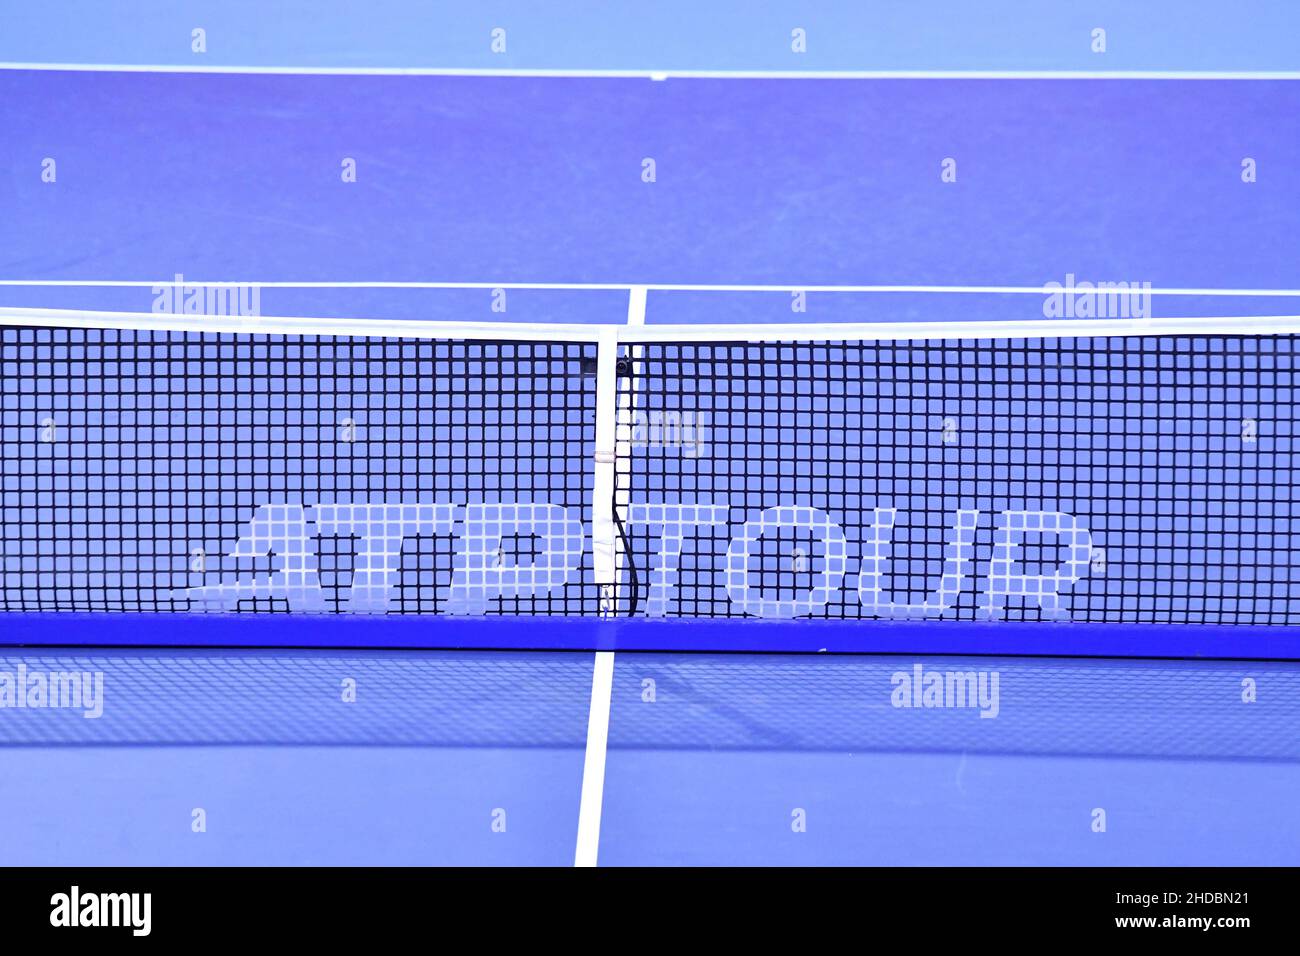 Filet de tennis sur surface bleue les finales ATP de la prochaine génération, à Milan. Banque D'Images